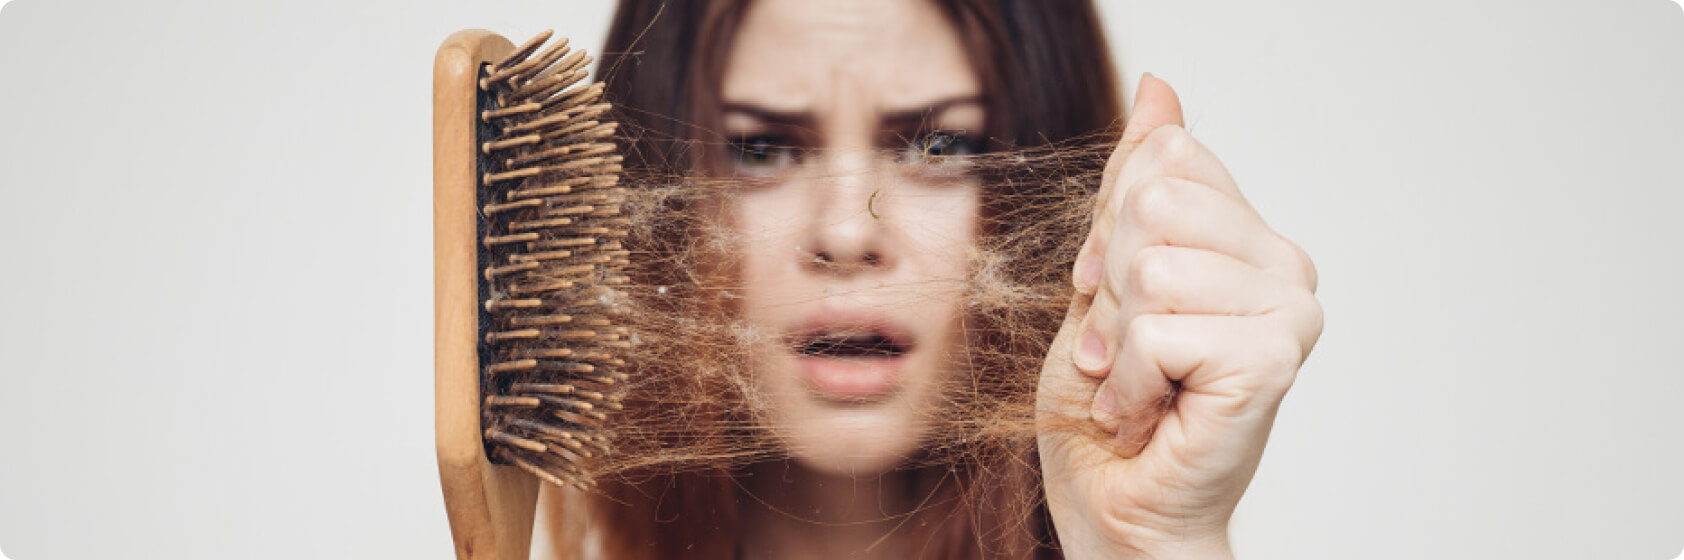 Haarausfall - Was versteht die Medizin unter Haarausfall?